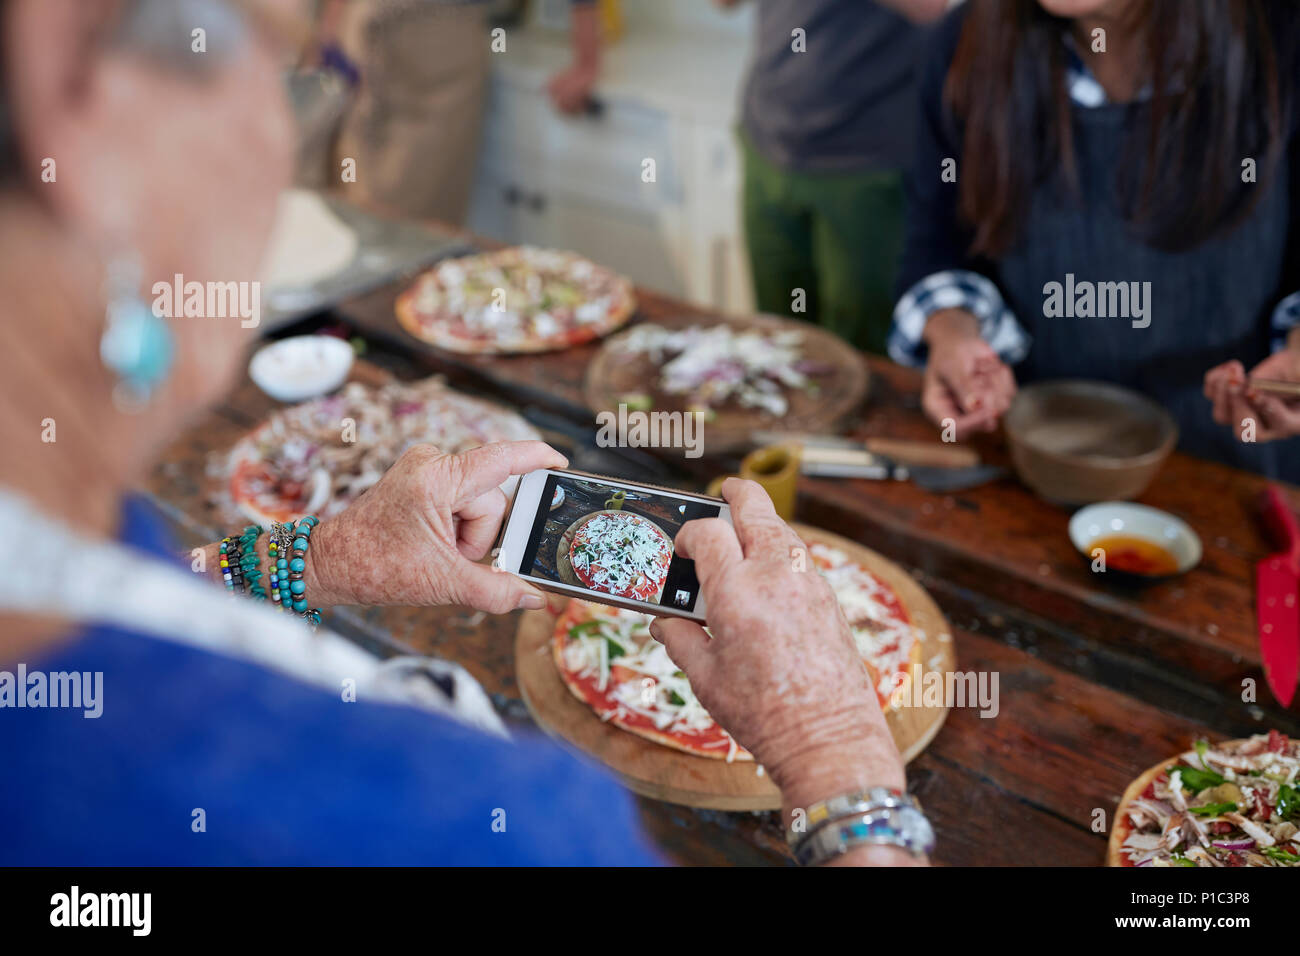 Senior woman with camera phone photographier des pizzas en cours de cuisine Banque D'Images